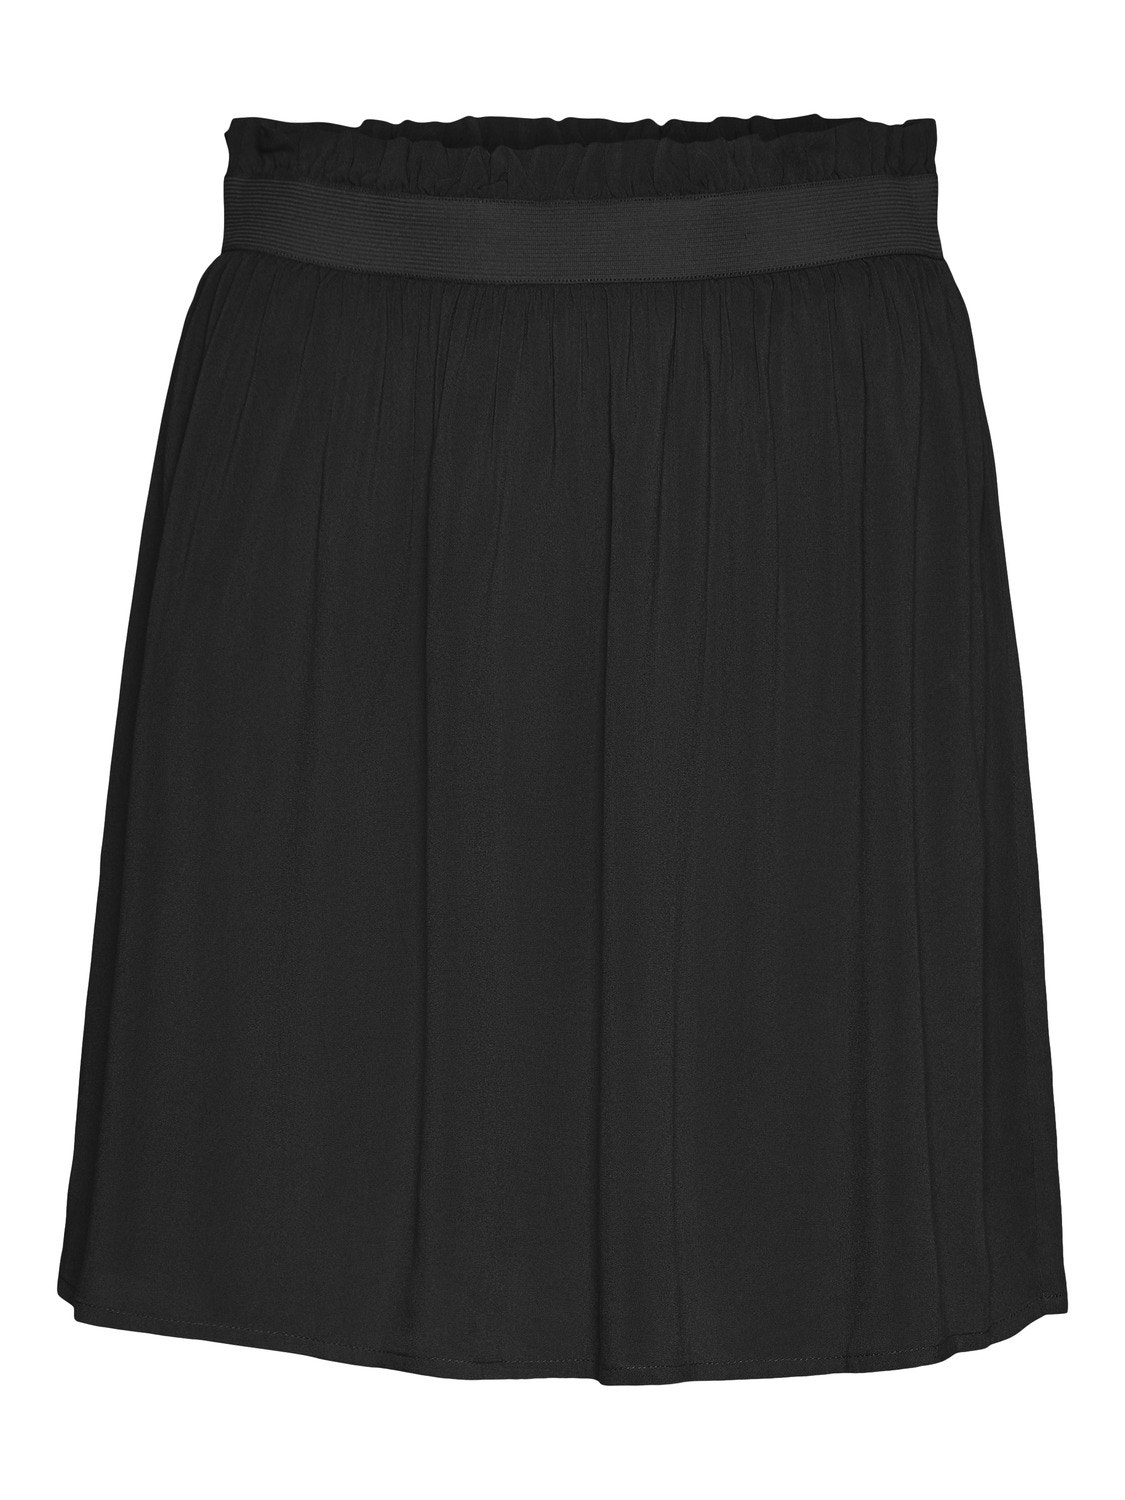 Vero Moda VMBEAUTY Short skirt -Black - 10263979